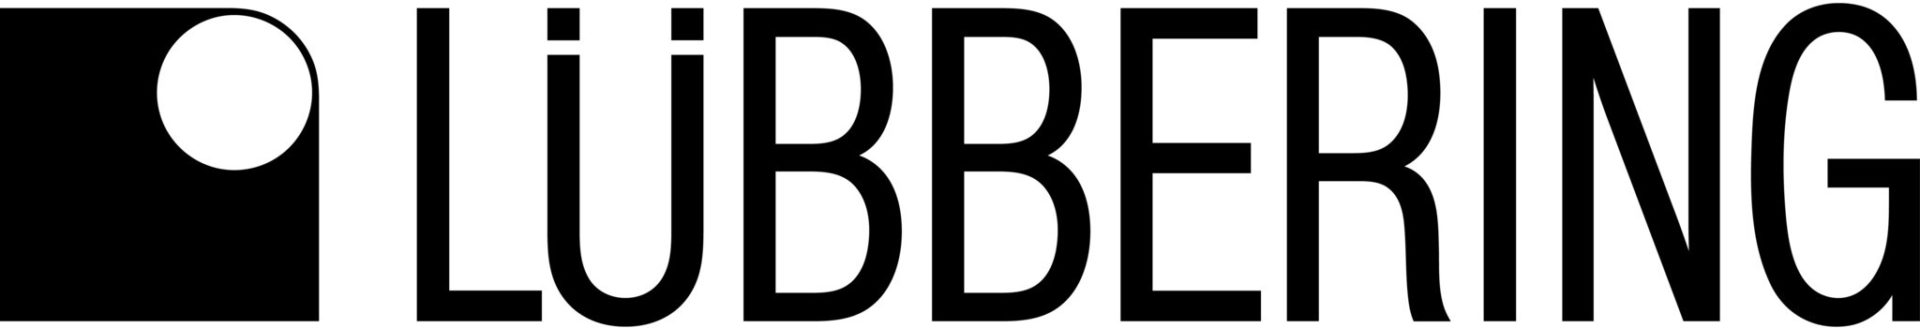 I-Luebbering-Logo.jpg